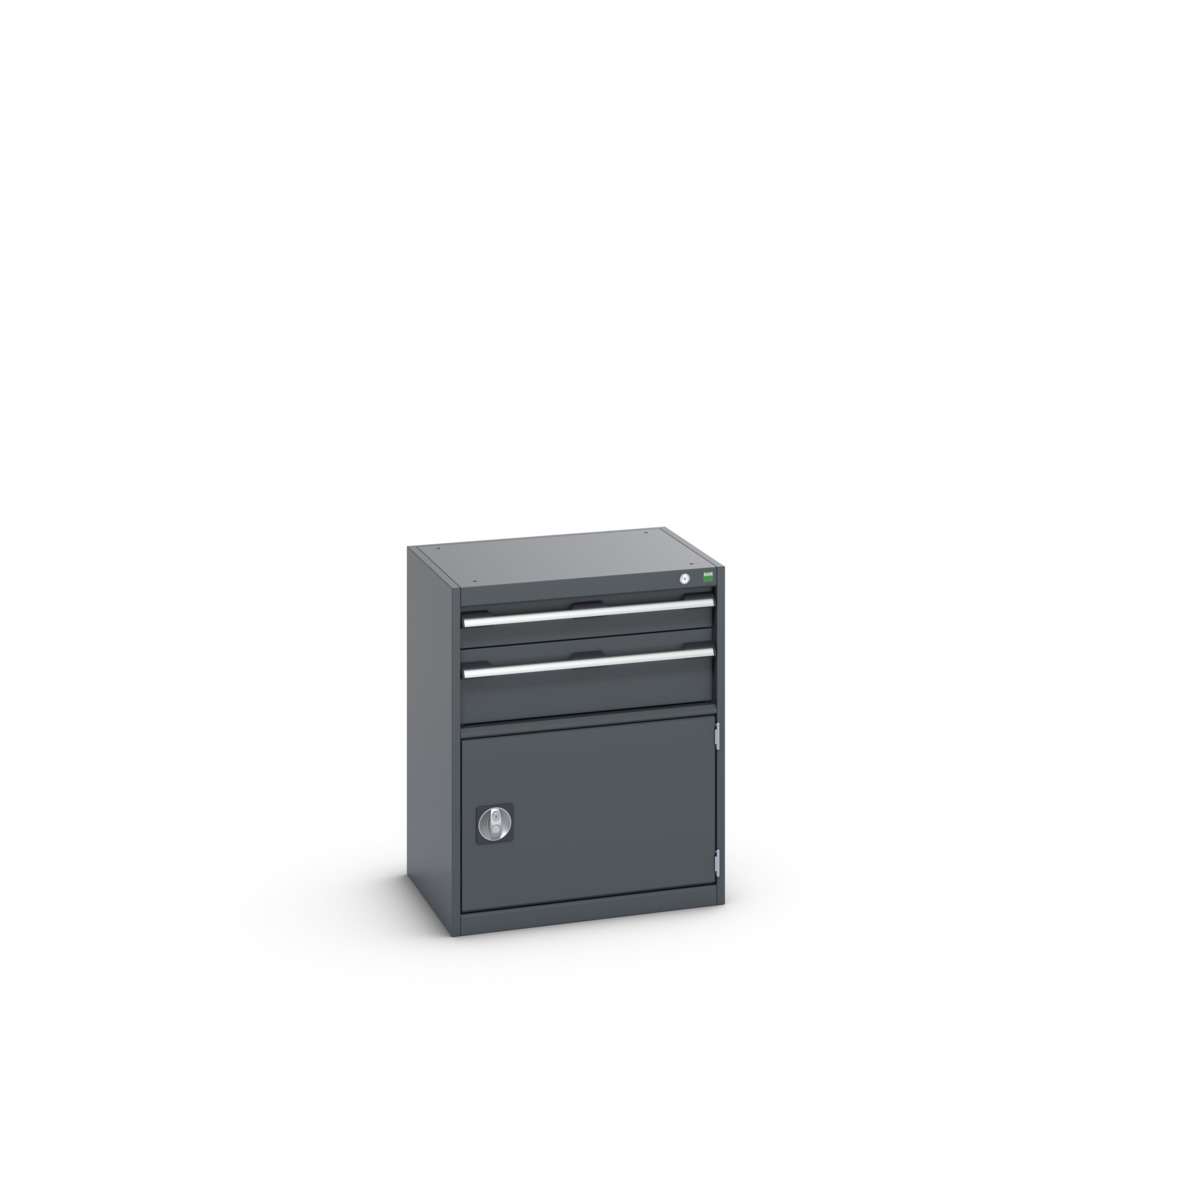 40011044.77V - cubio drawer-door cabinet